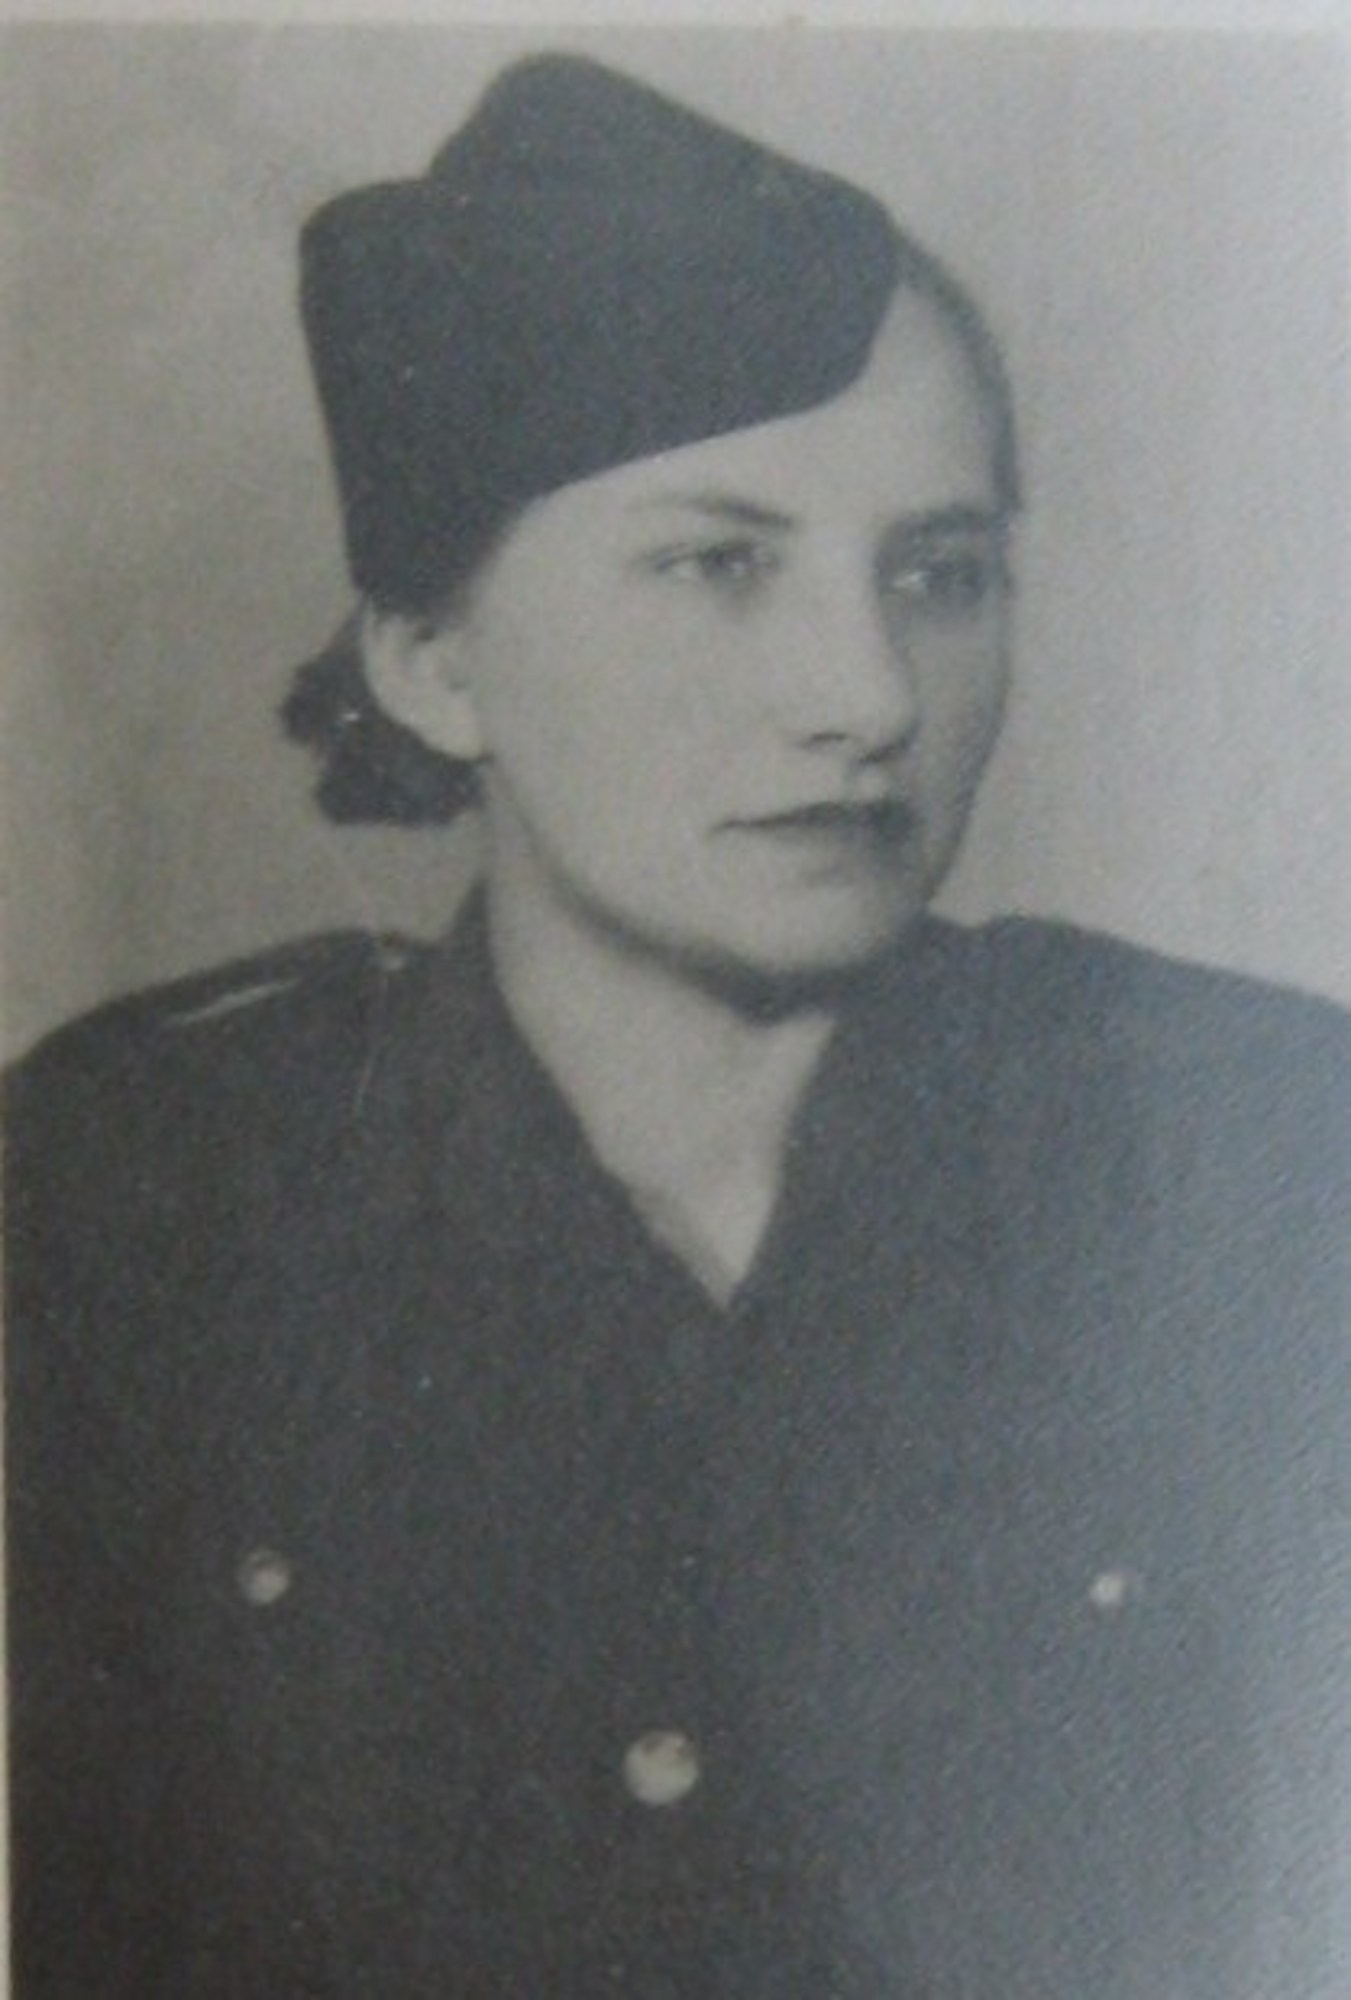 Emílie Jarmarová v armádě